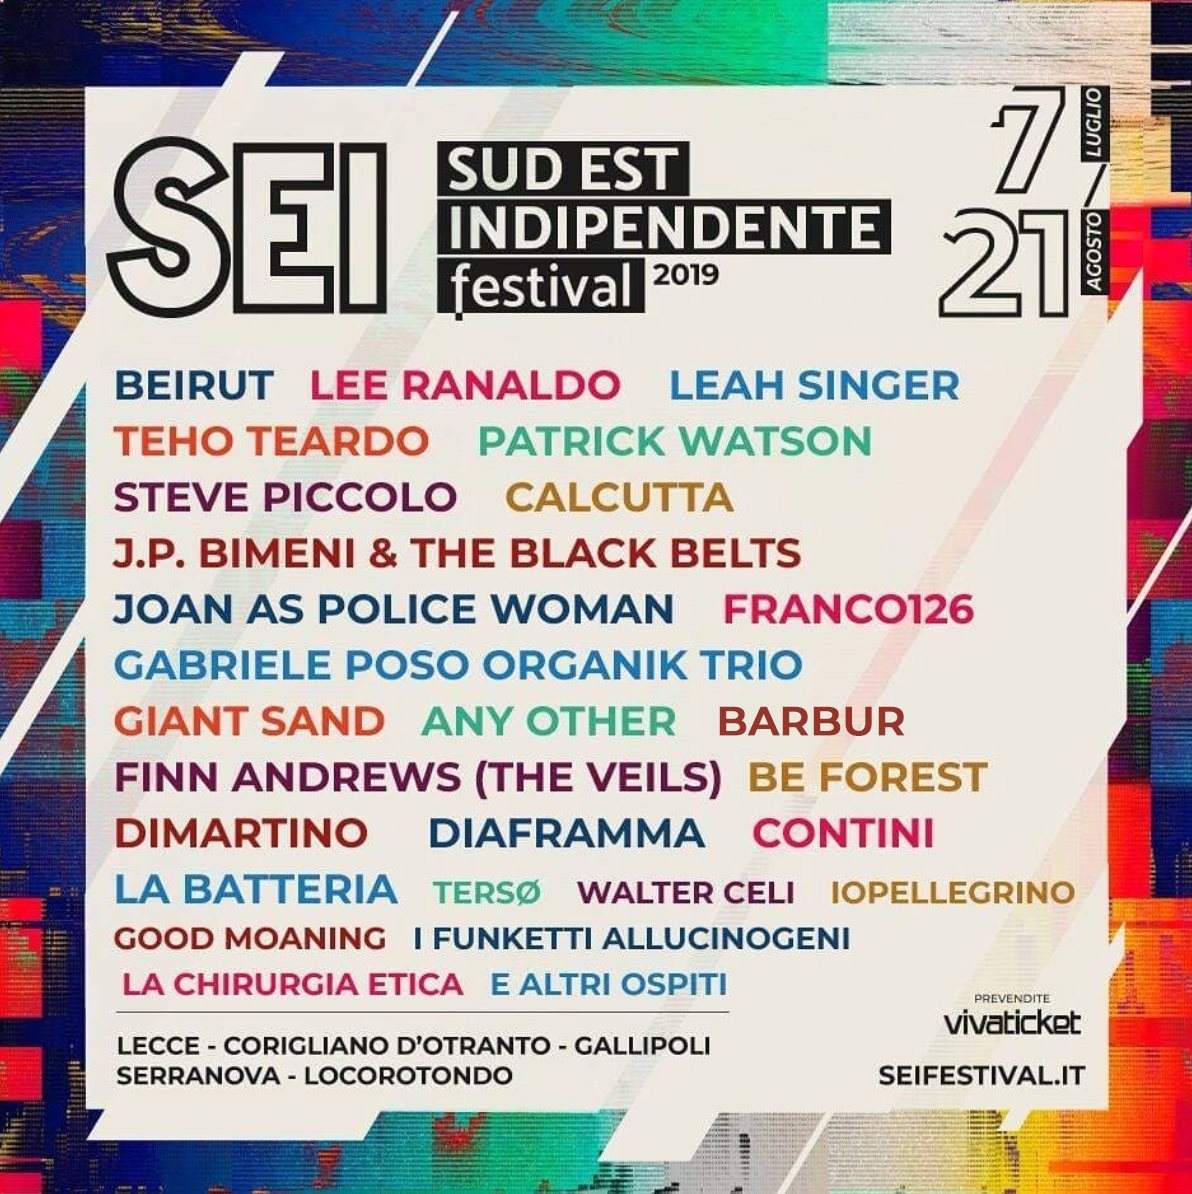 SEI Festival - Sud Est Indipendente - 7 Luglio/21 Agosto - フライヤー表